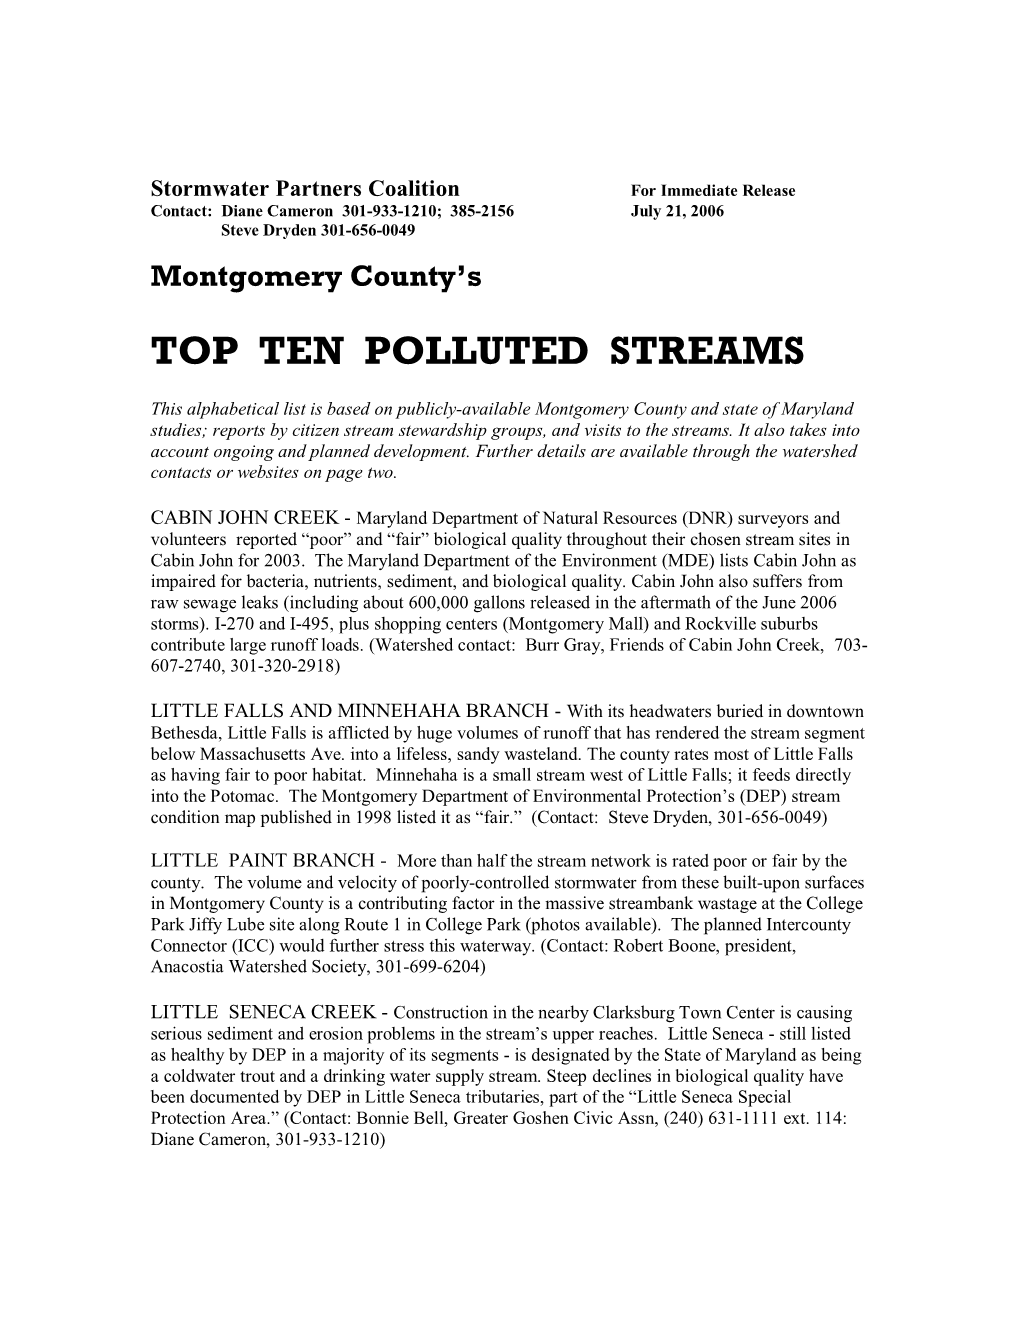 Top Ten Polluted Streams